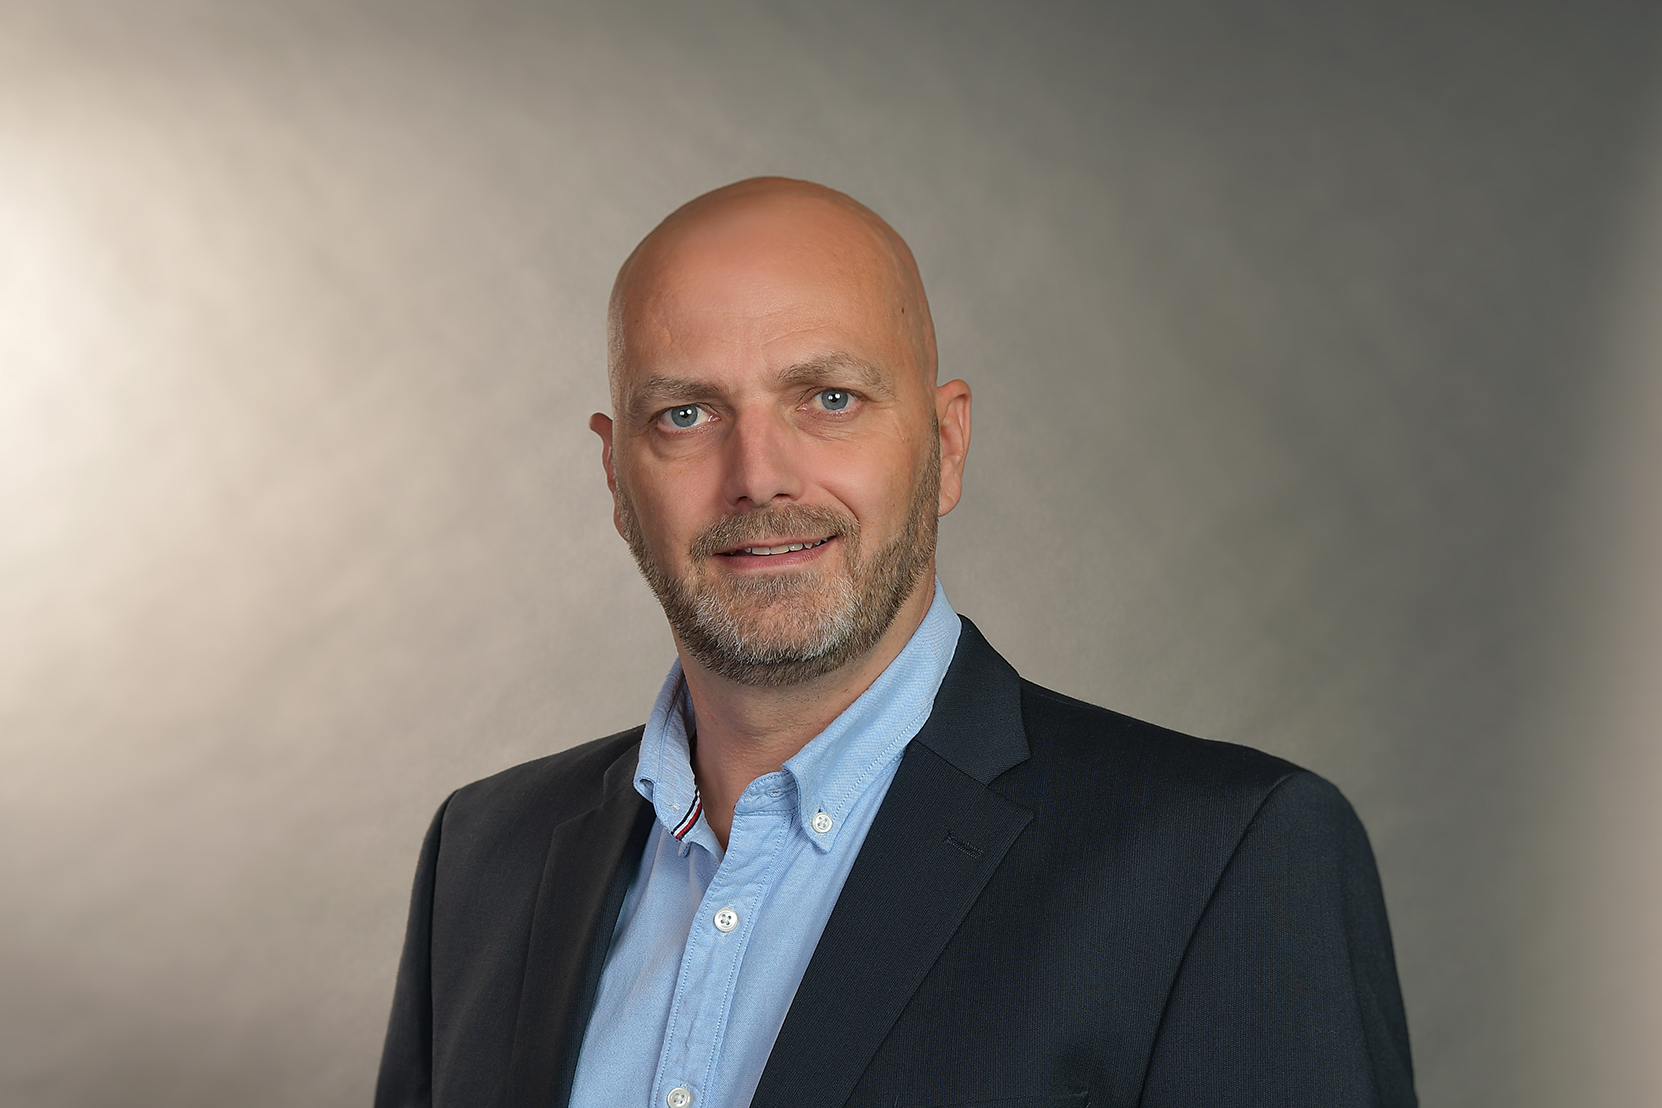 Dirk Knuth auf Platz 1 bei Bürgermeisterwahl Mittenwalde: Mit 45,4% in die Stichwahl